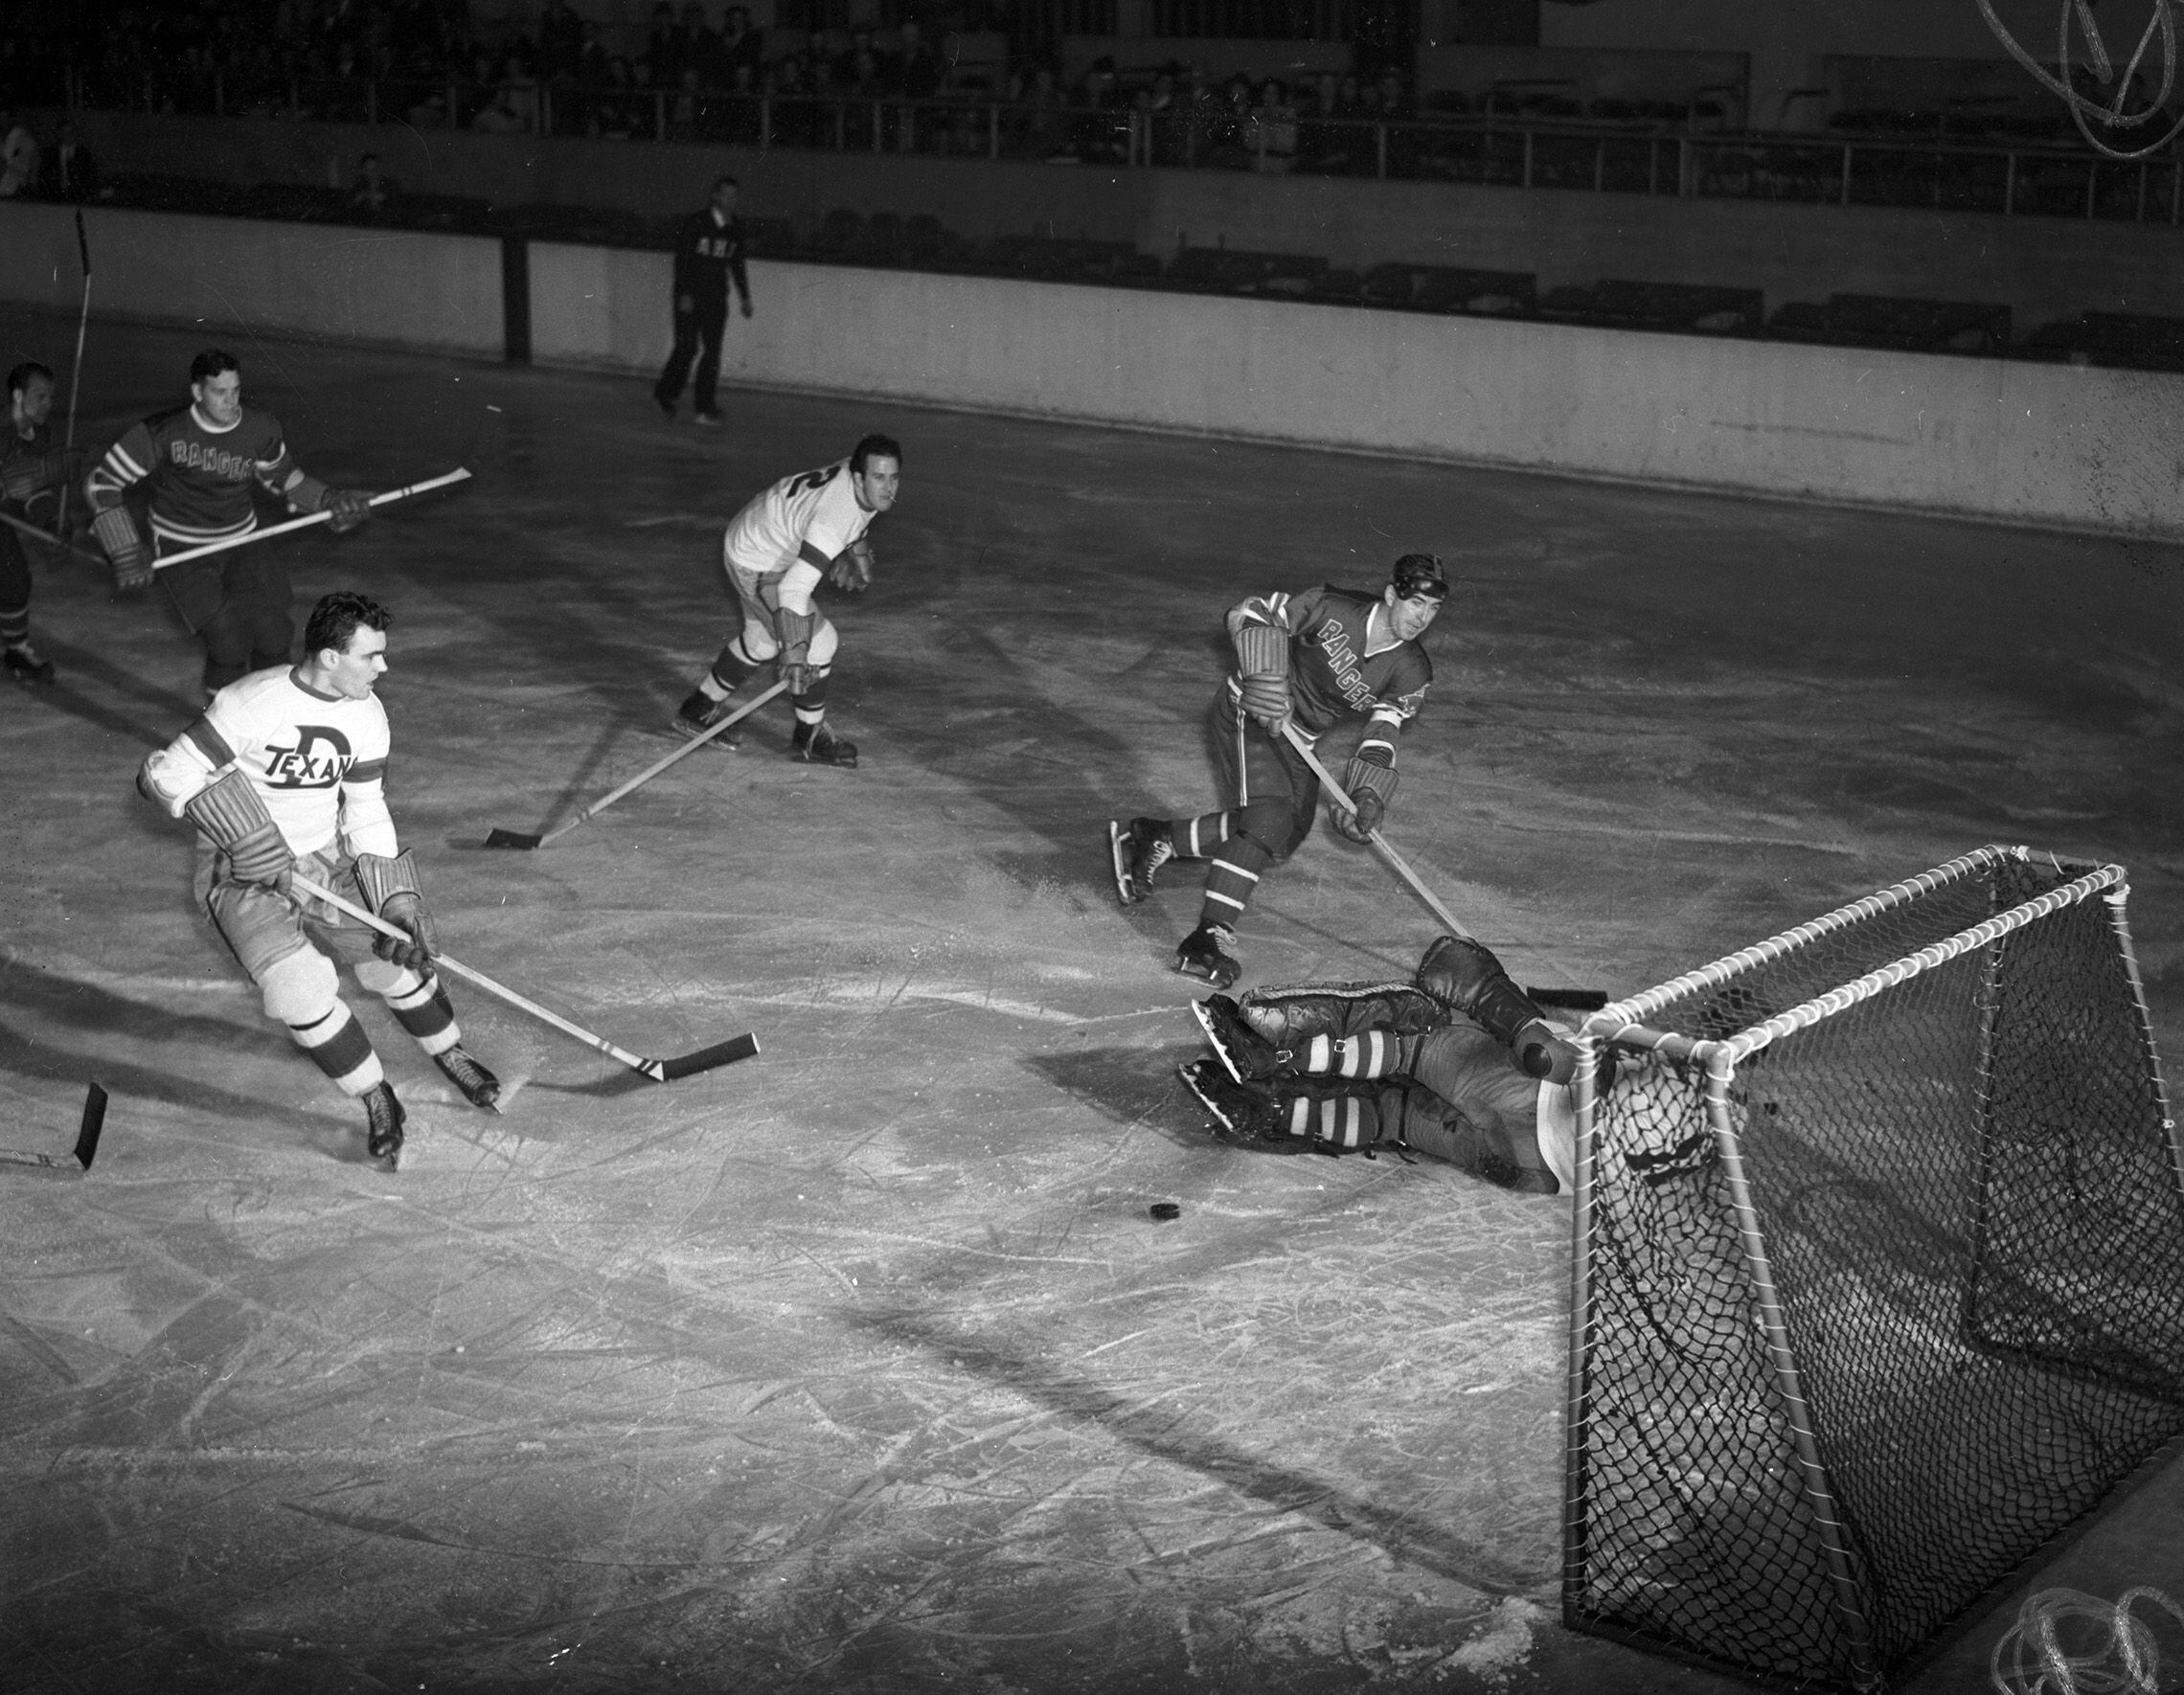 Hockey history: Has Kansas City had pro teams before?